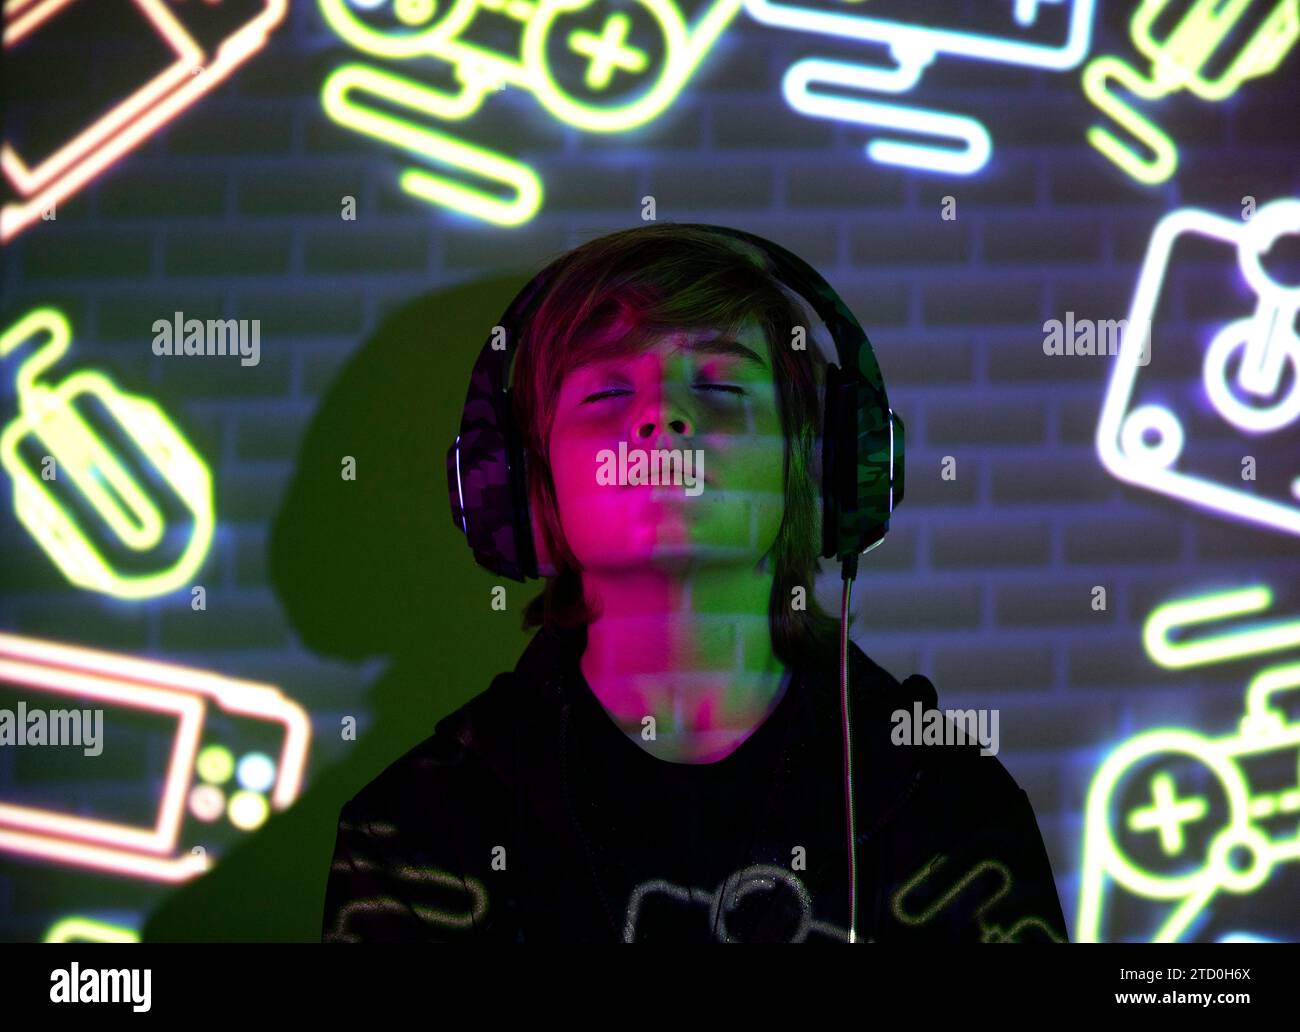 Ein junger Junge, der in der Musik verloren ist, mit farbenfrohen Neon-Gaming-Ikonen auf Gesicht und Hintergrund, die eine lebendige und moderne Atmosphäre schaffen. Stockfoto